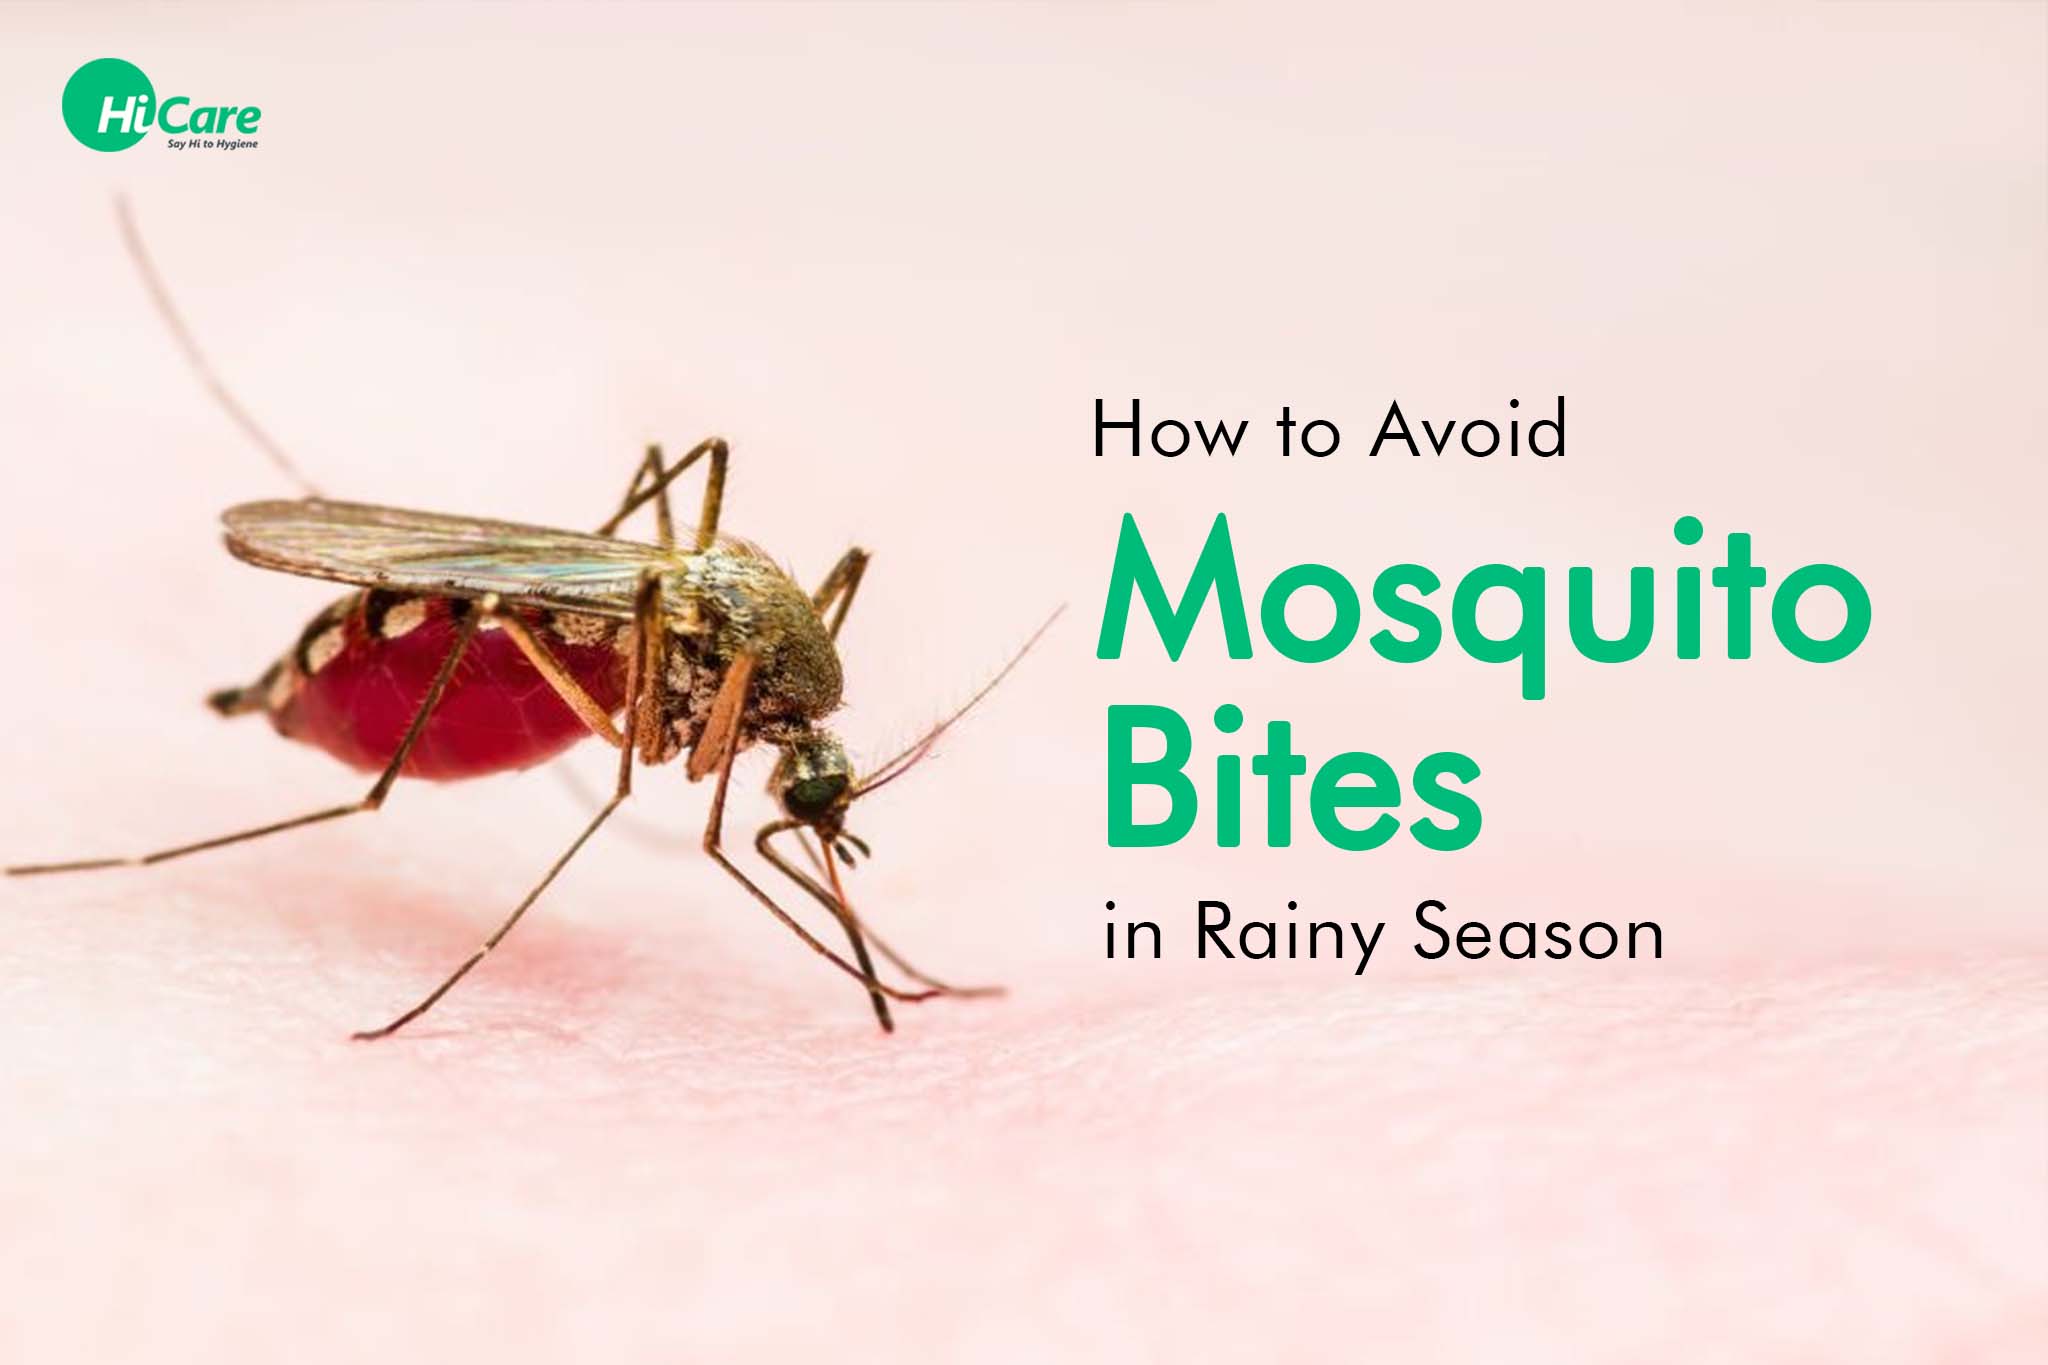 How to Avoid Mosquito Bites in Rainy Season?